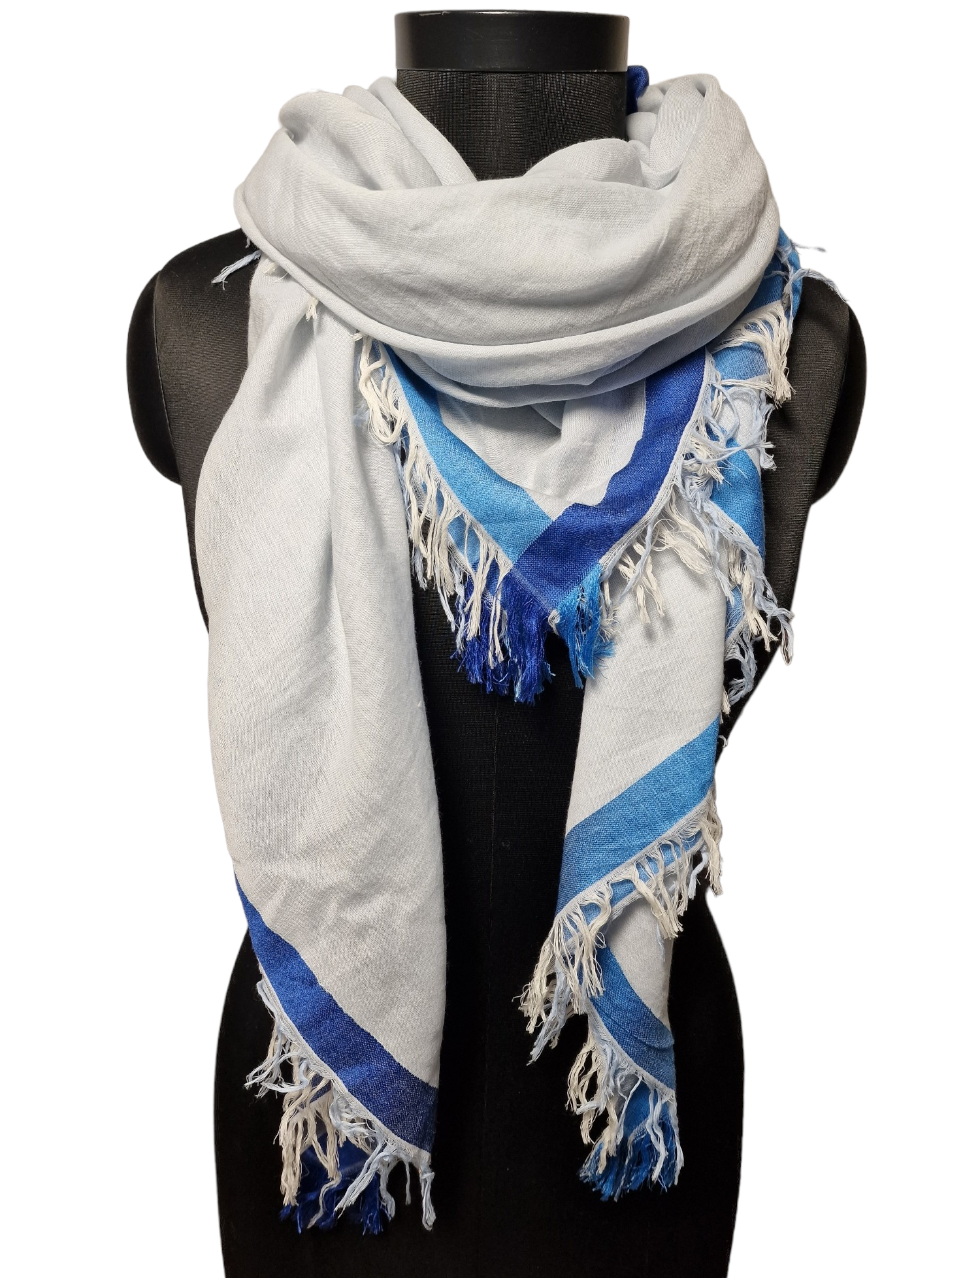 Stort firkantet lyseblått sjal med mørkeblå kant (7)